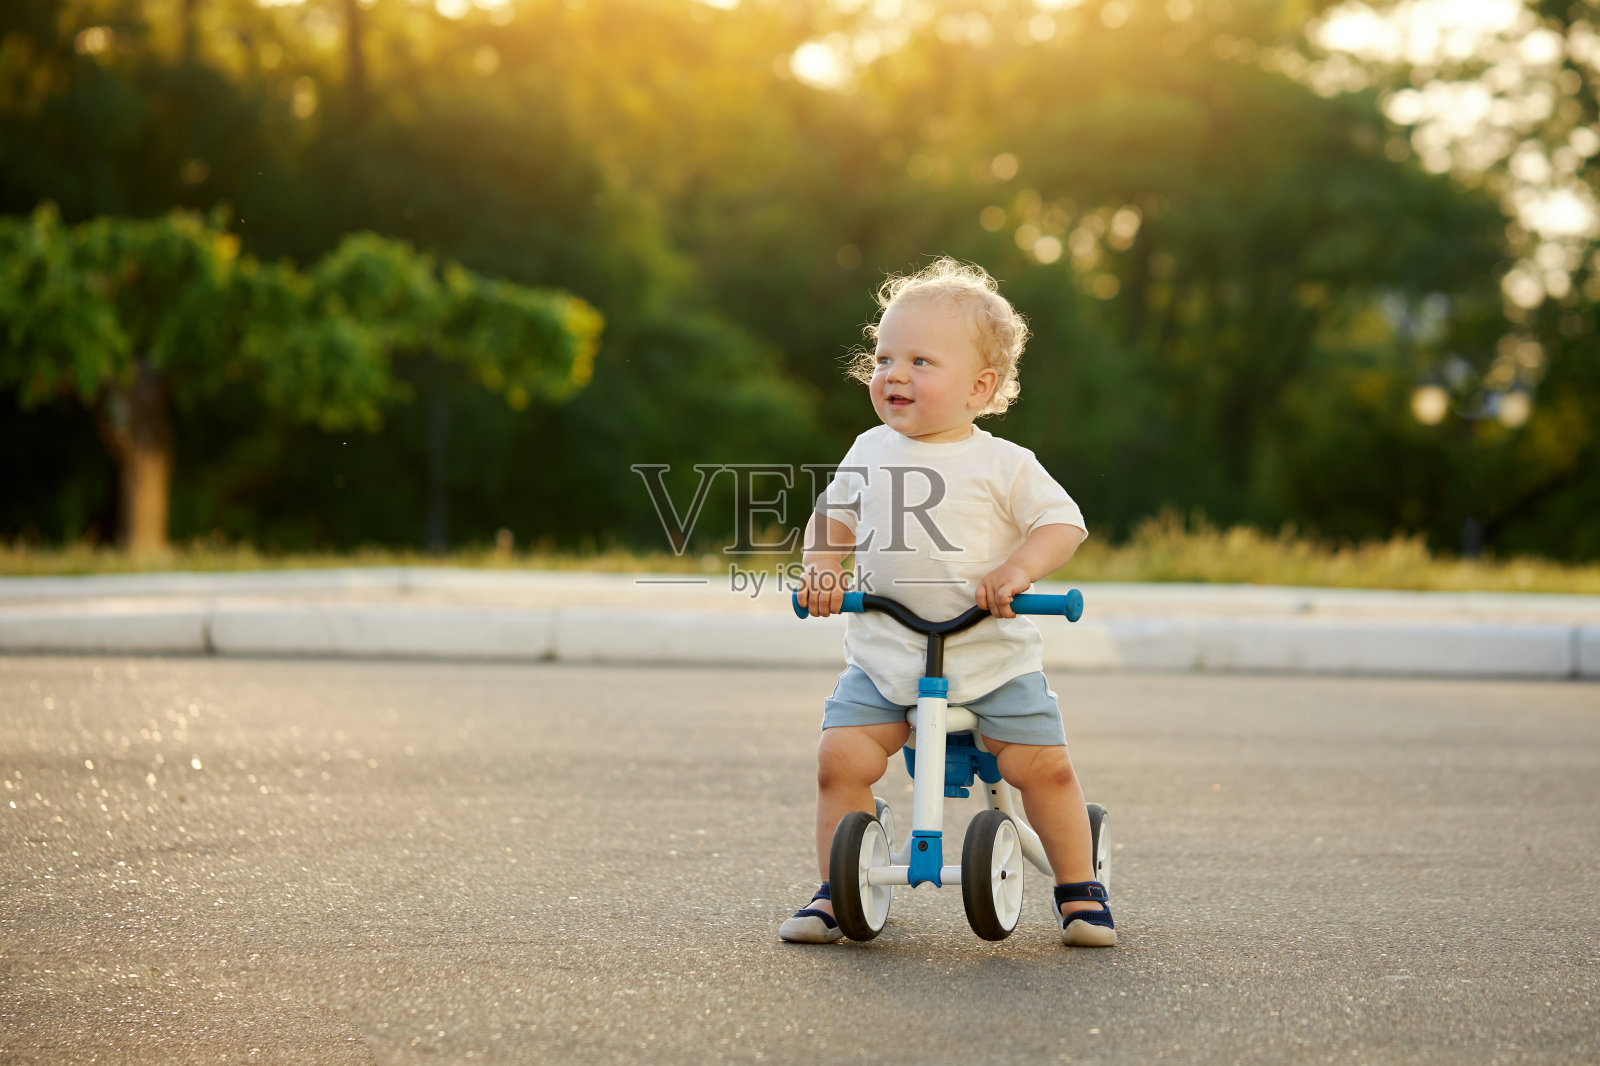 可爱宝宝学骑平衡自行车。一个小孩试图在阳光明媚的公园里骑自行车。那孩子梦想成为一名摩托车手照片摄影图片